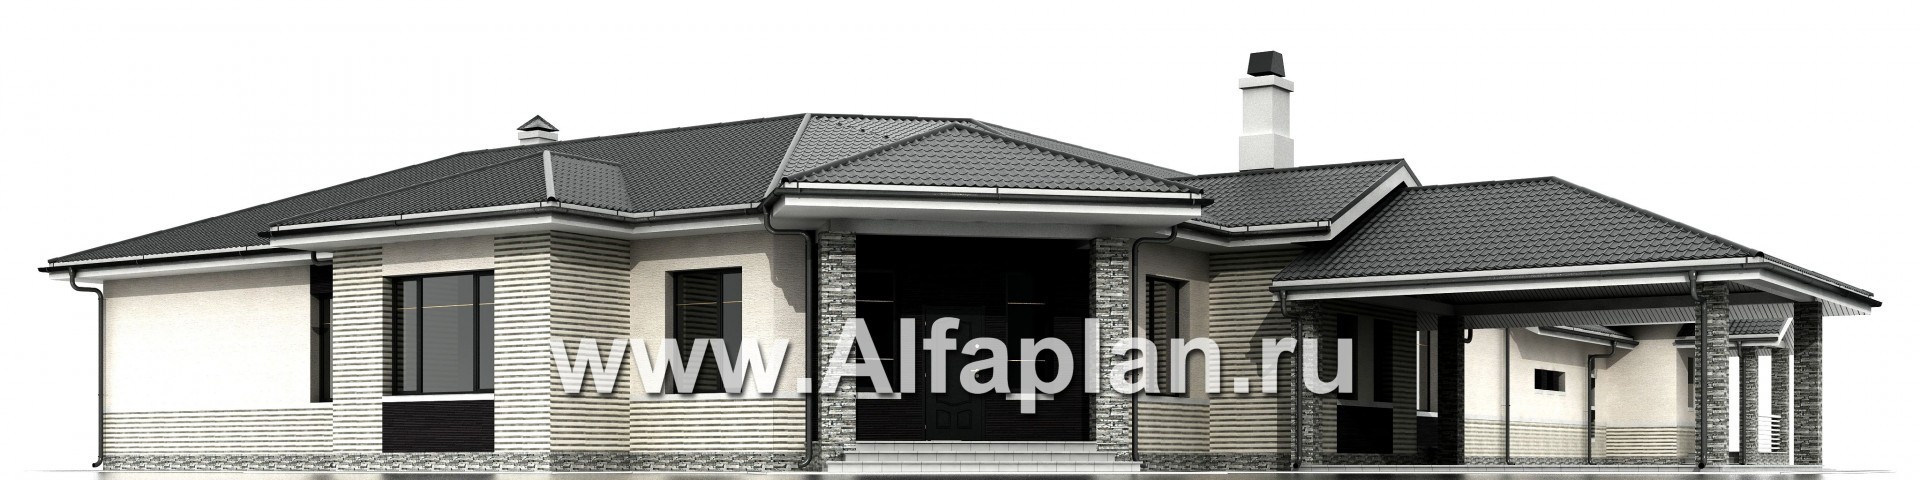 Проекты домов Альфаплан - «Модуль» — проект одноэтажного дома, со спортзалом и сауной, с бассейном и гостевой квартирой - изображение фасада №1